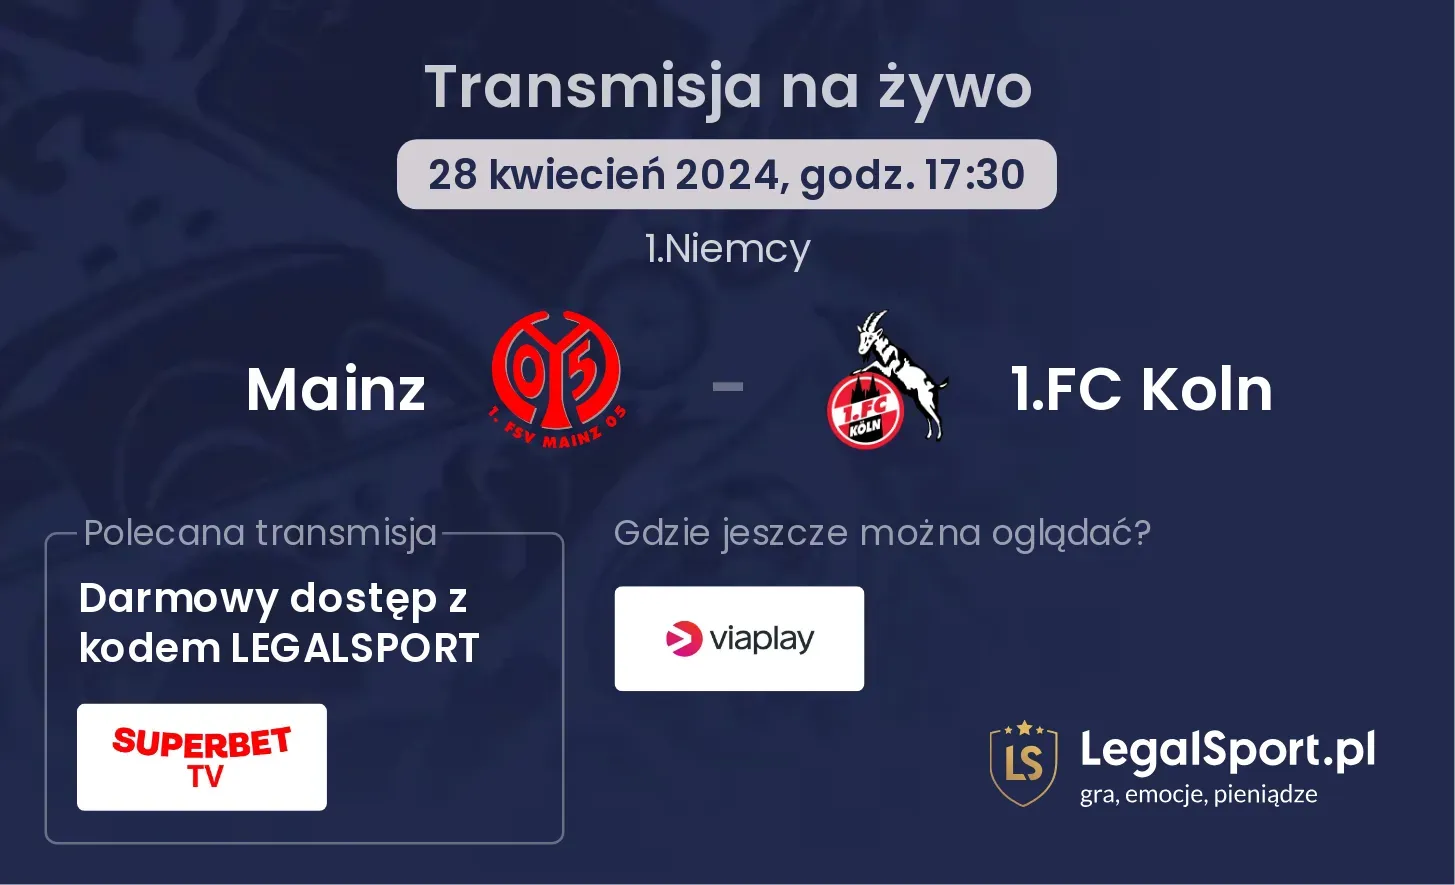 Mainz - 1.FC Koln transmisja na żywo